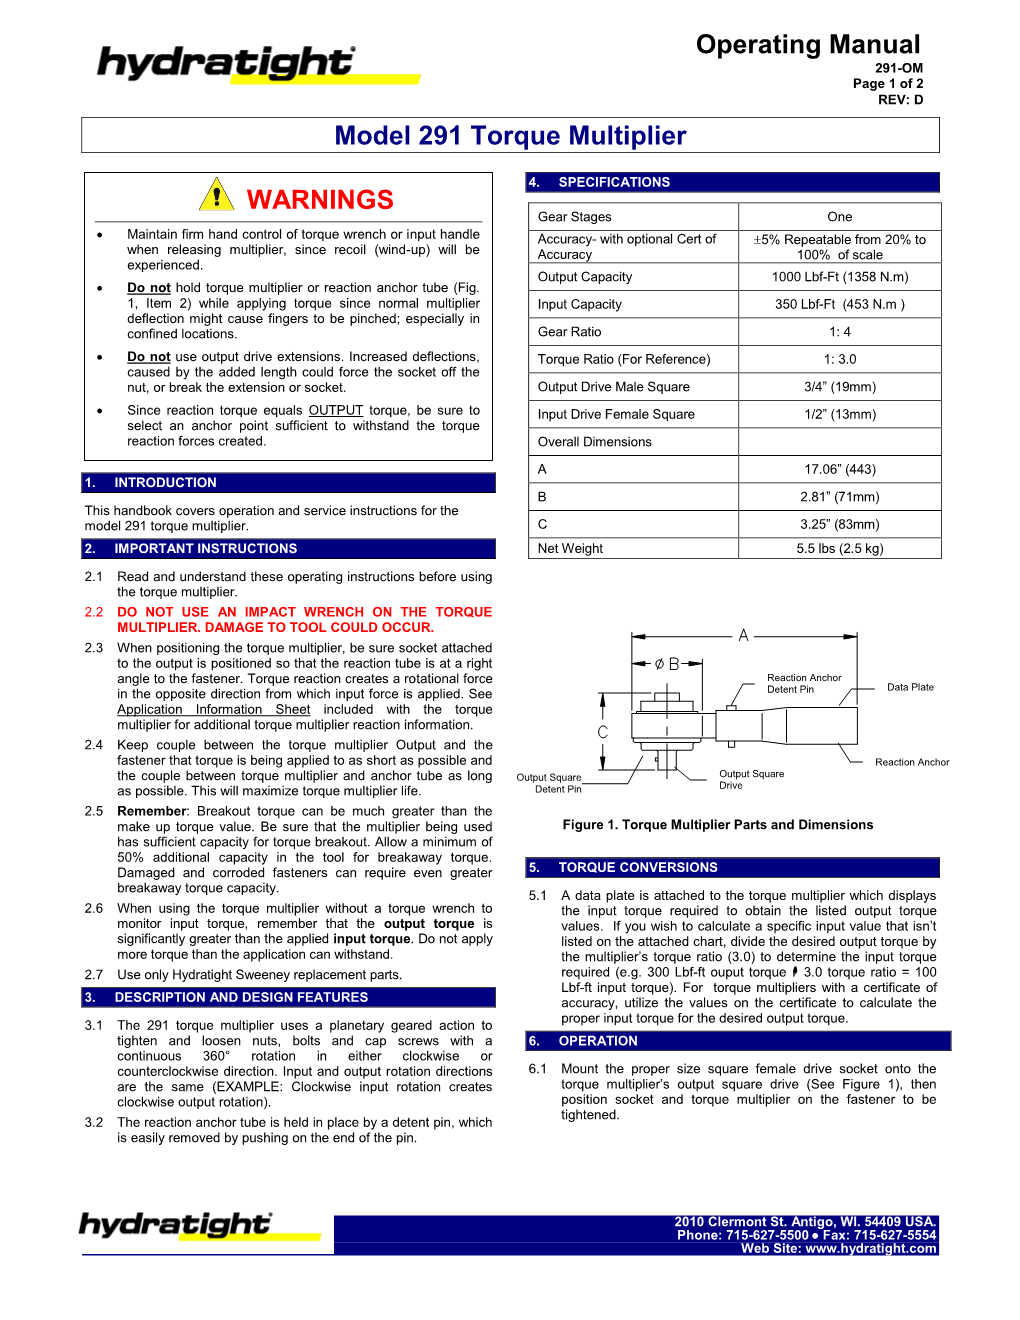 Operating Manual WARNINGS Model 291 Torque Multiplier